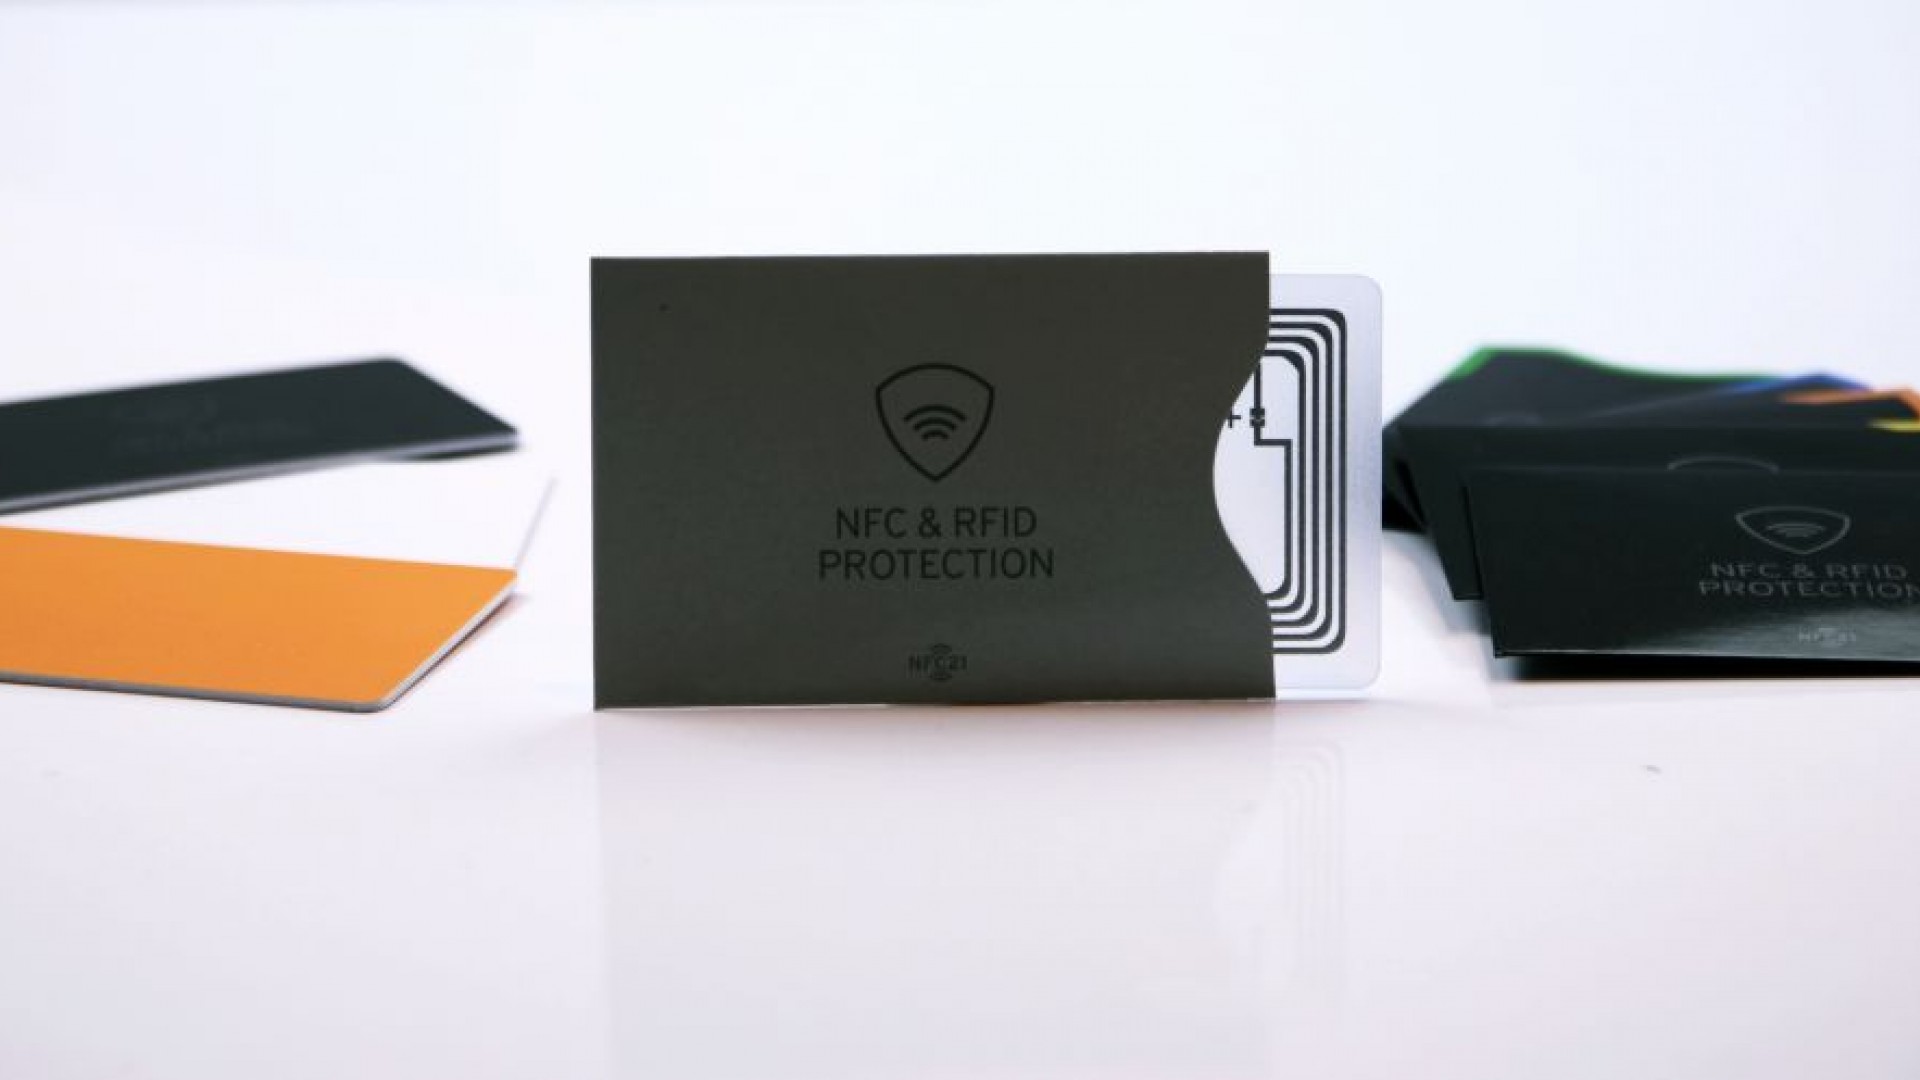 NFC-Blocken - NFC fähige Kreditkarten und Bankkarten gegen das Auslesen schützen